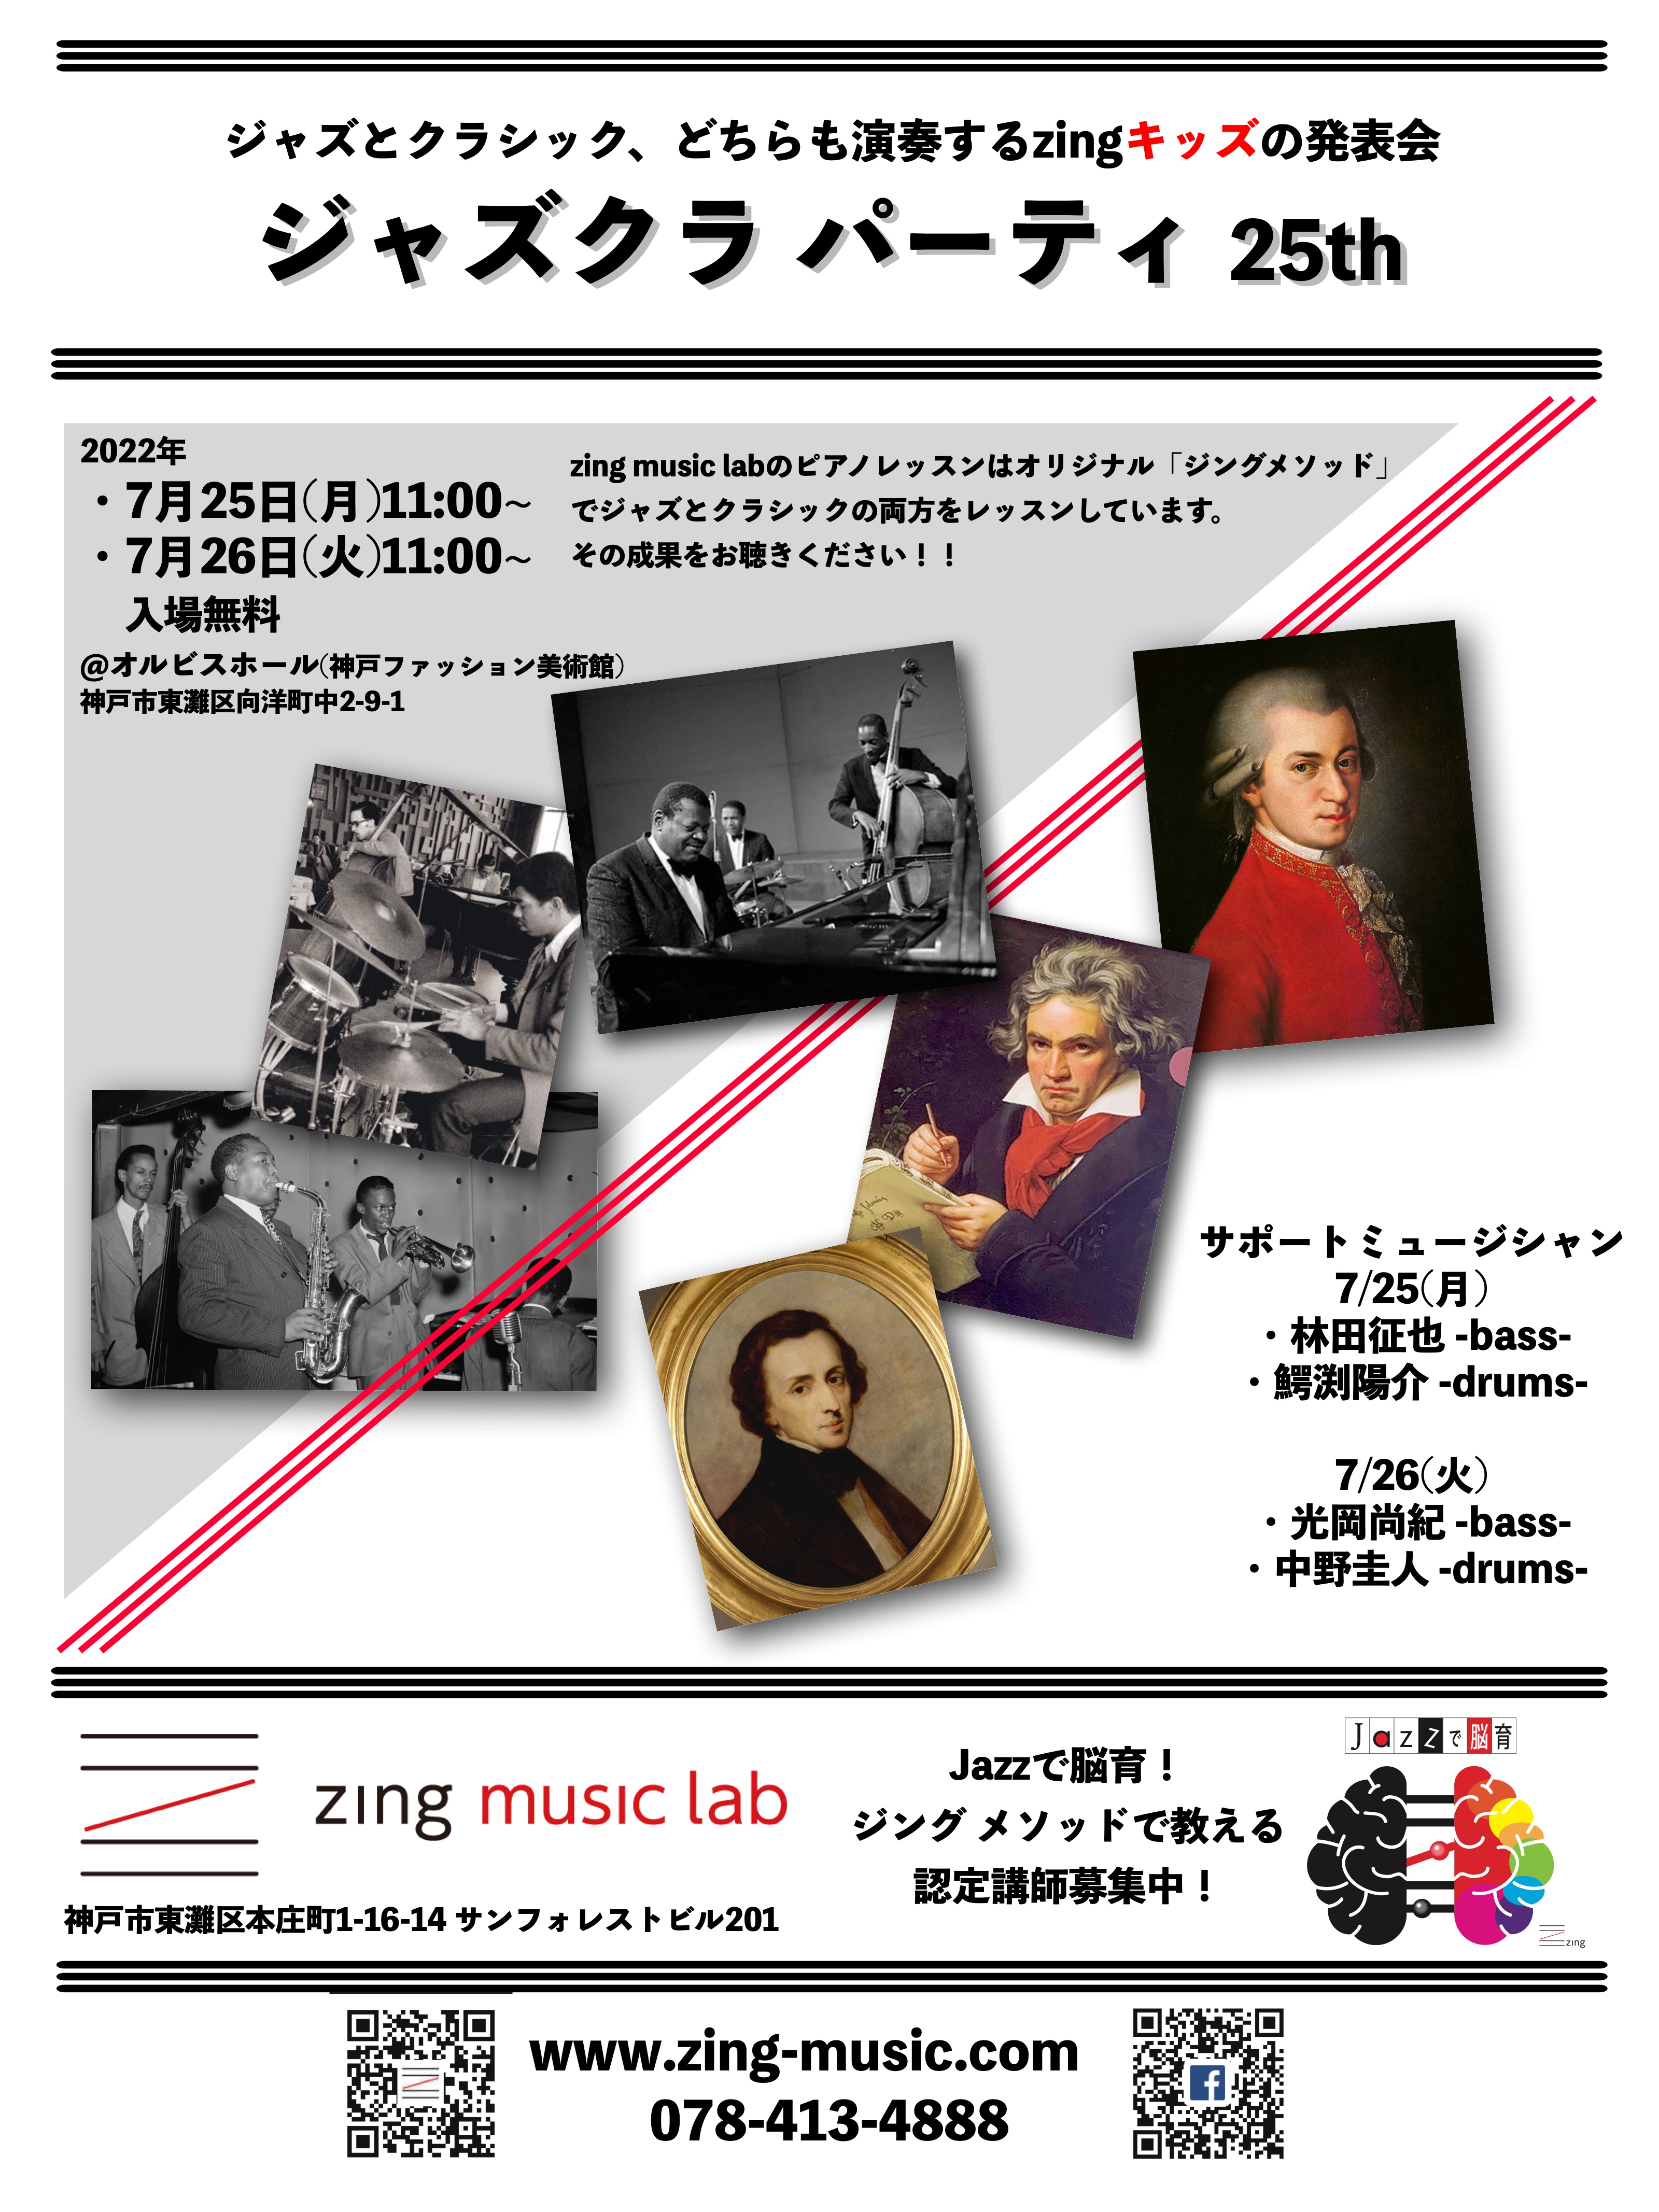 【オルビスホール情報】7/25(月) ・26(火) 「zing ジャズクラパーティ  発表会」開催のお知らせ